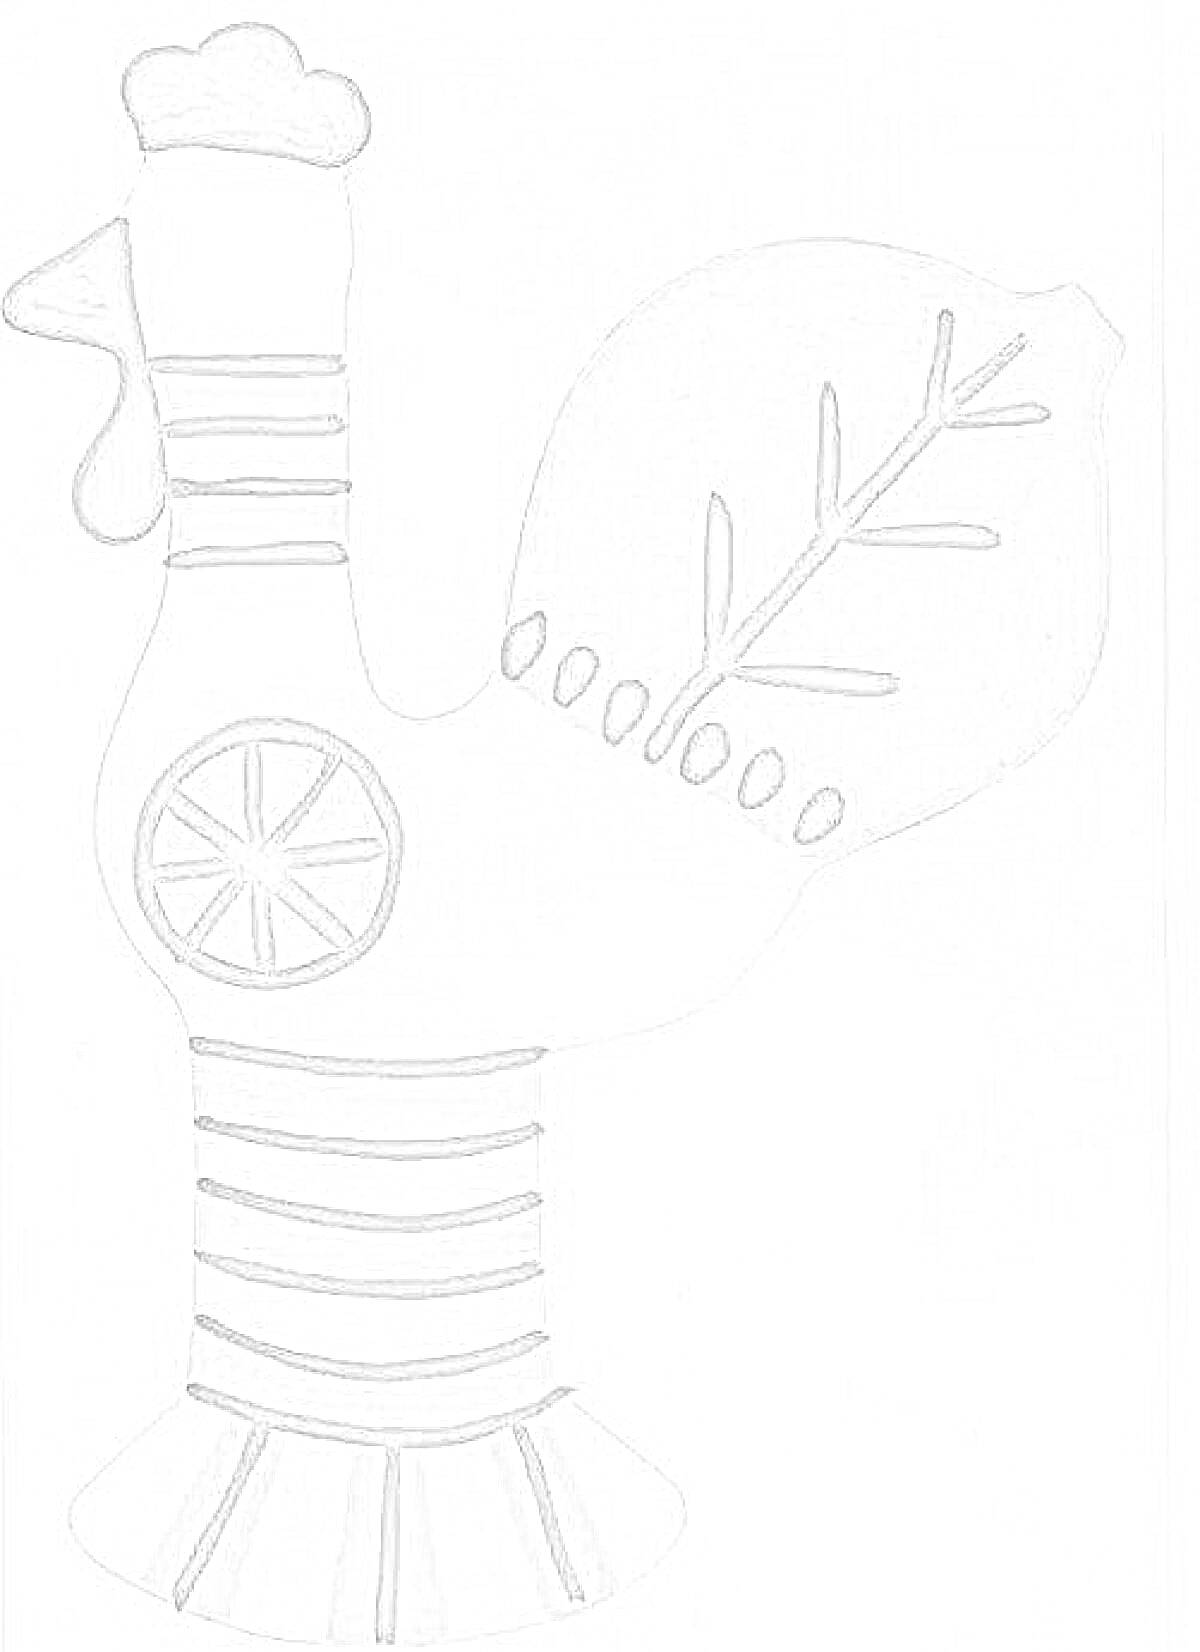 Раскраска Филимоновская игрушка петушок с узором на хвосте и туловище